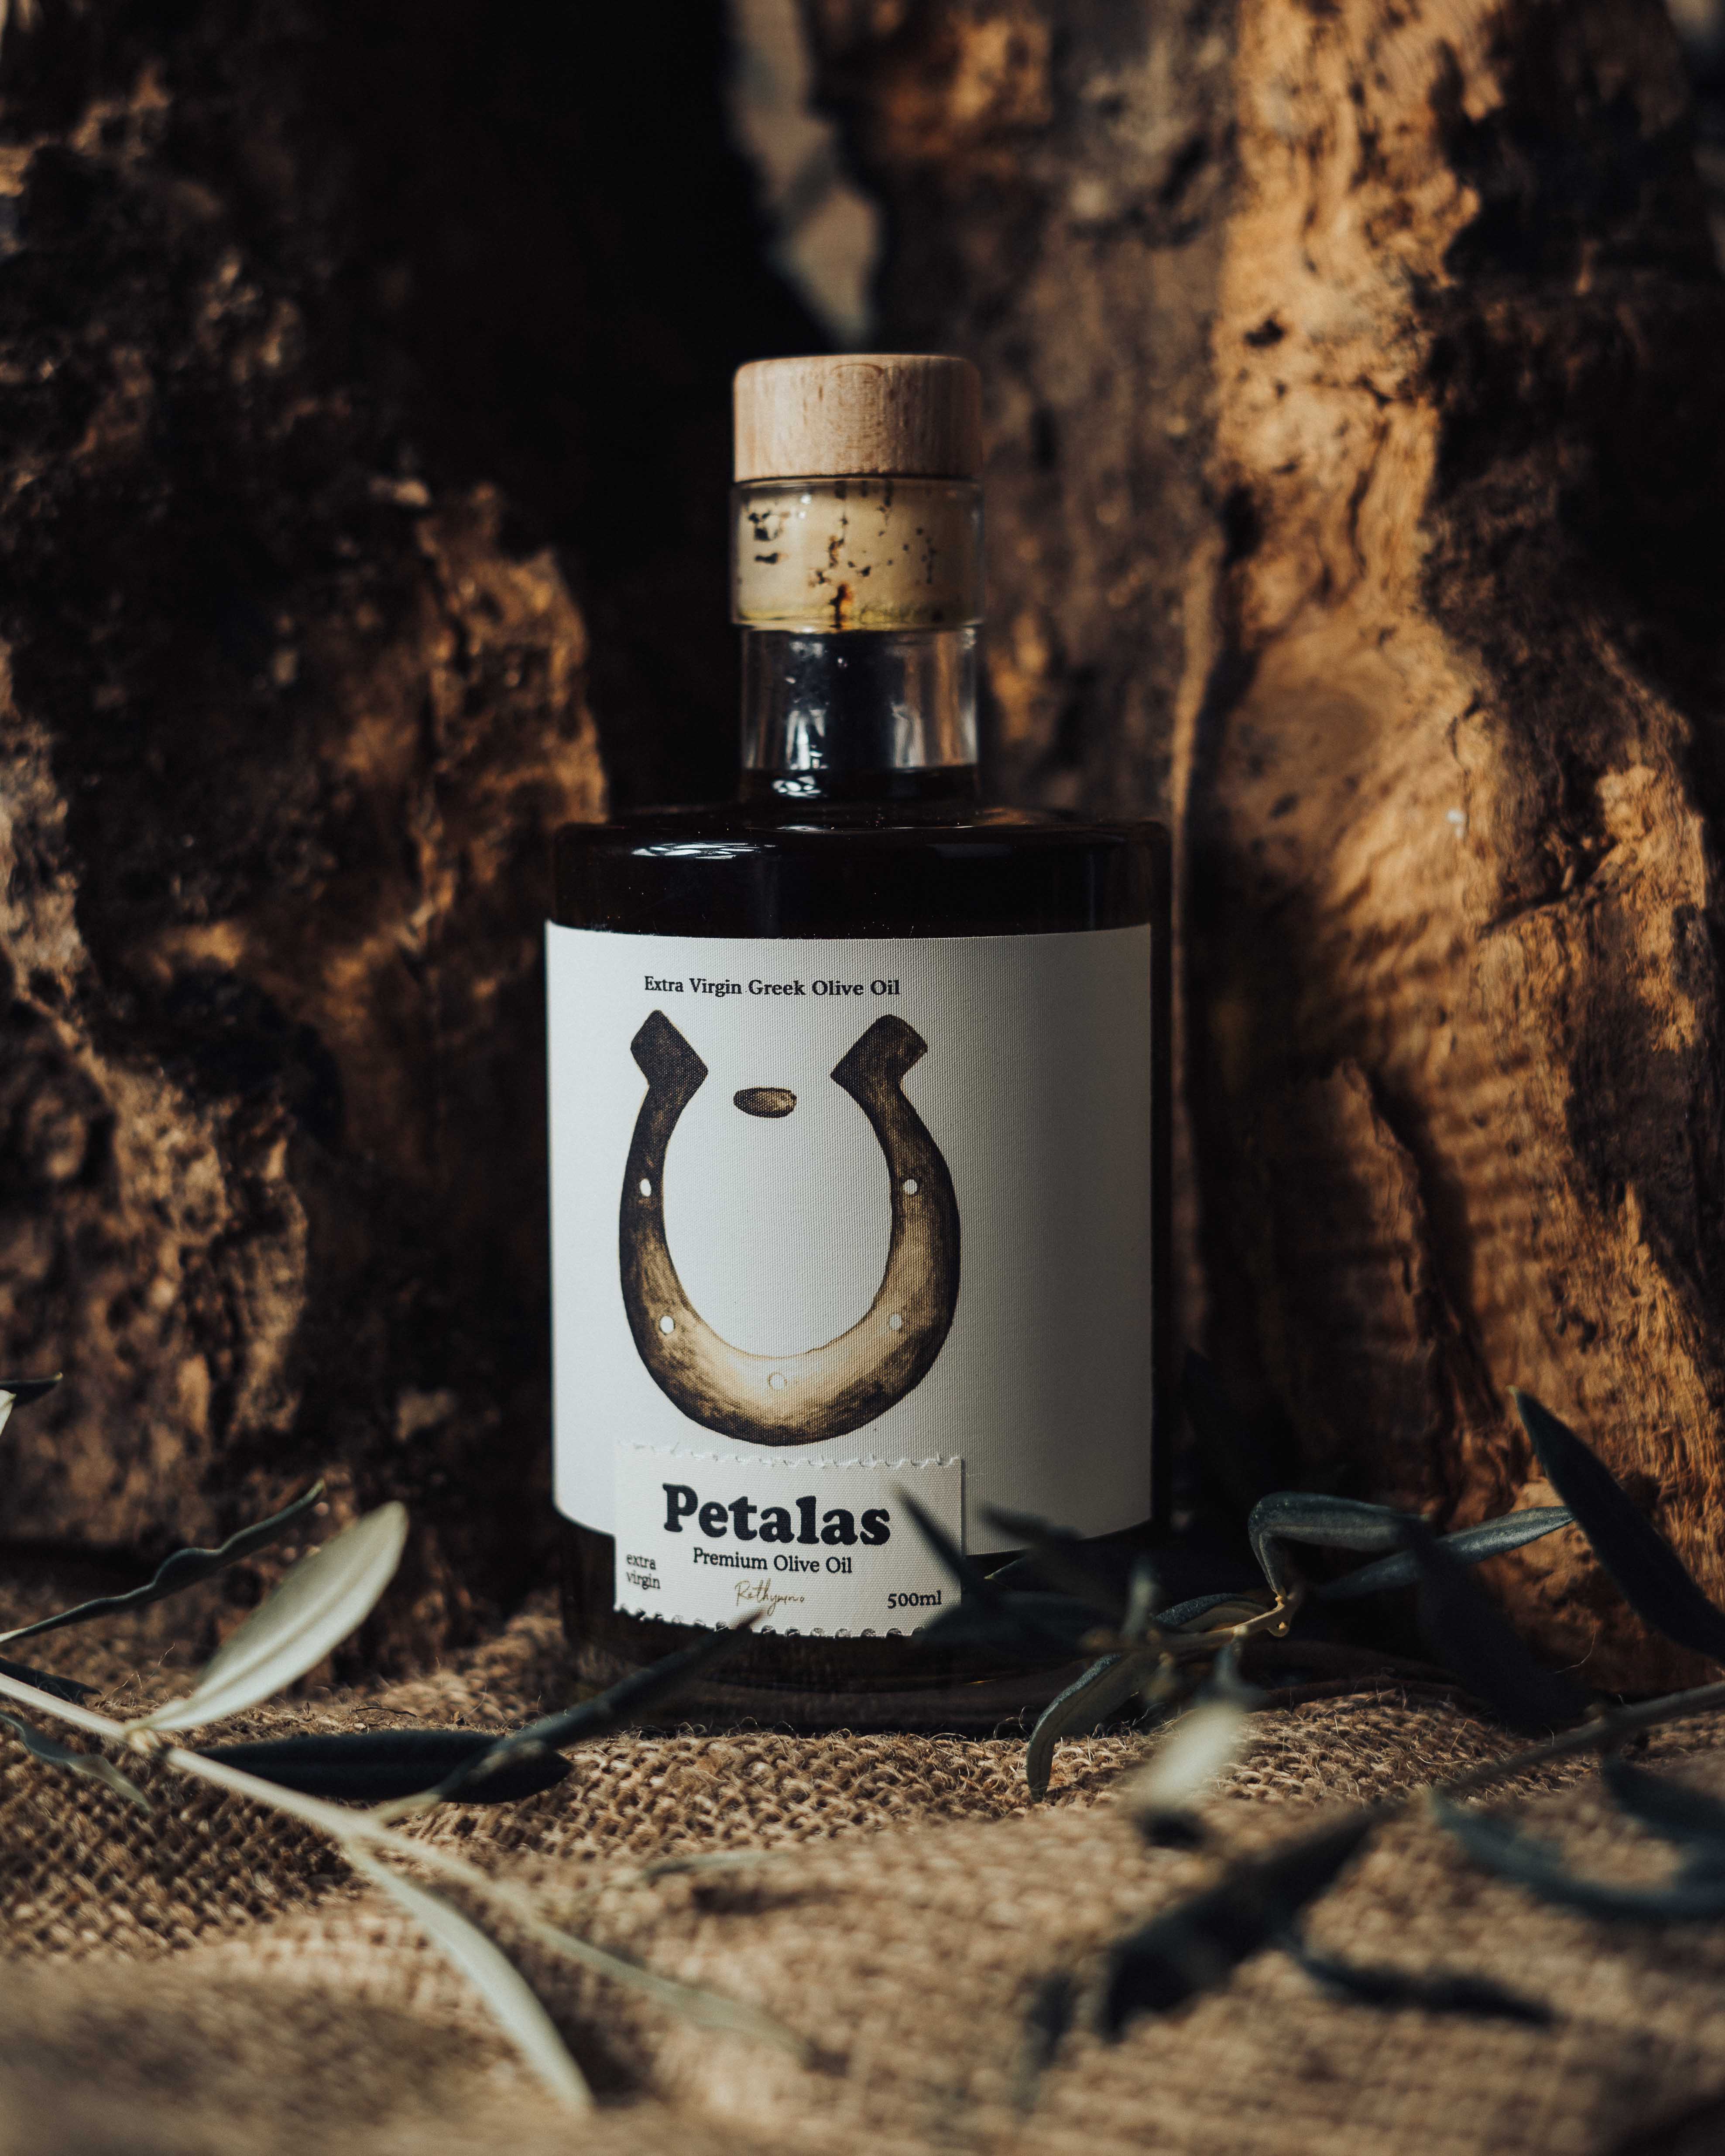 Petalas Premium Olive Oil Packaging Design